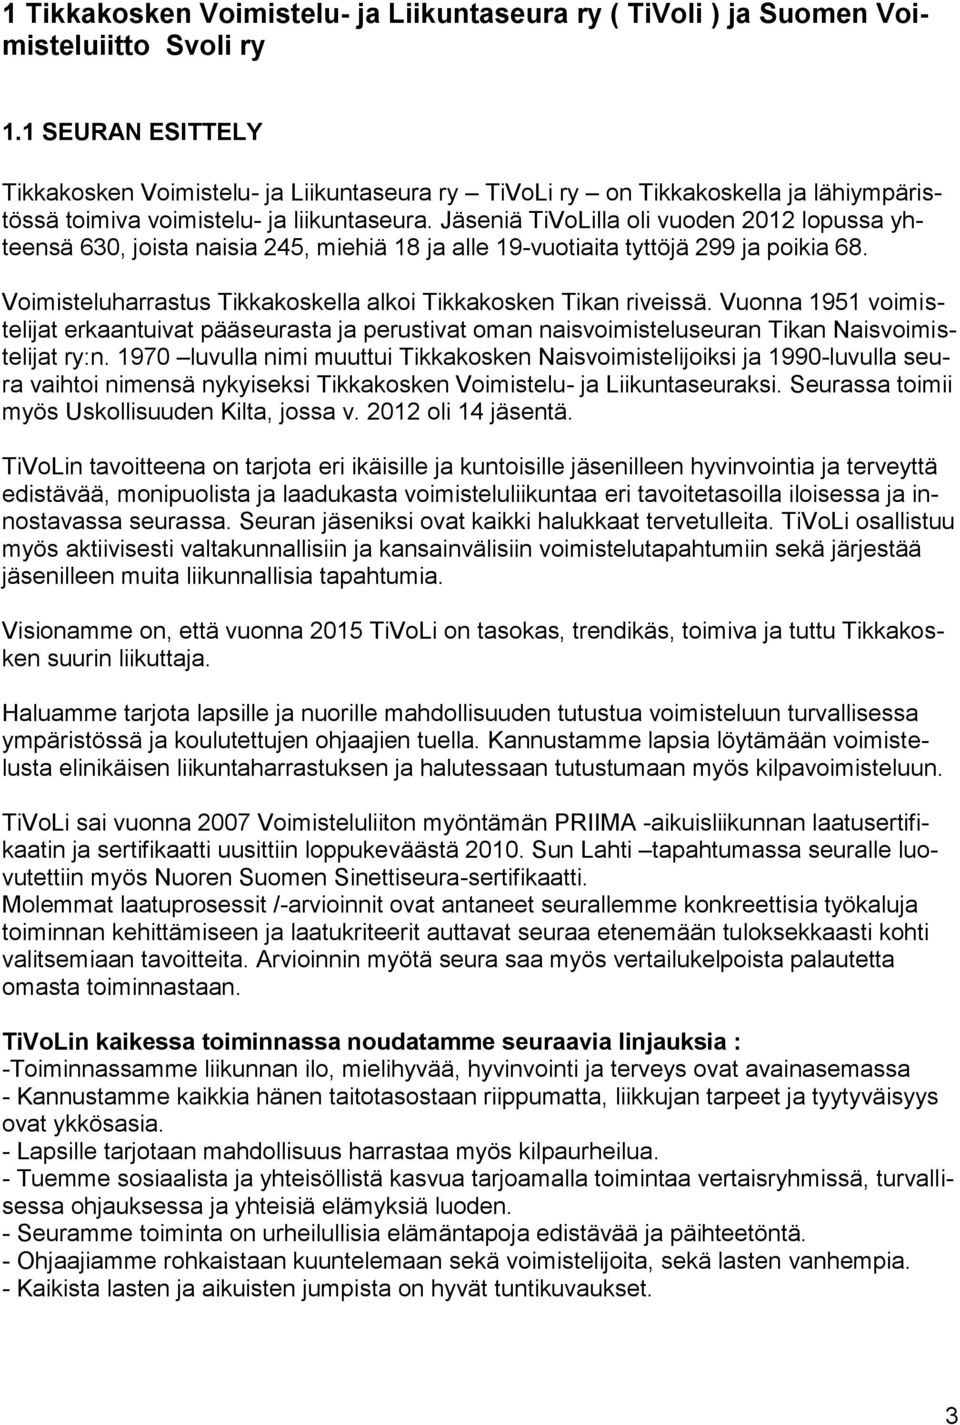 Jäseniä TiVoLilla oli vuoden 2012 lopussa yhteensä 630, joista naisia 245, miehiä 18 ja alle 19-vuotiaita tyttöjä 299 ja poikia 68. Voimisteluharrastus Tikkakoskella alkoi Tikkakosken Tikan riveissä.